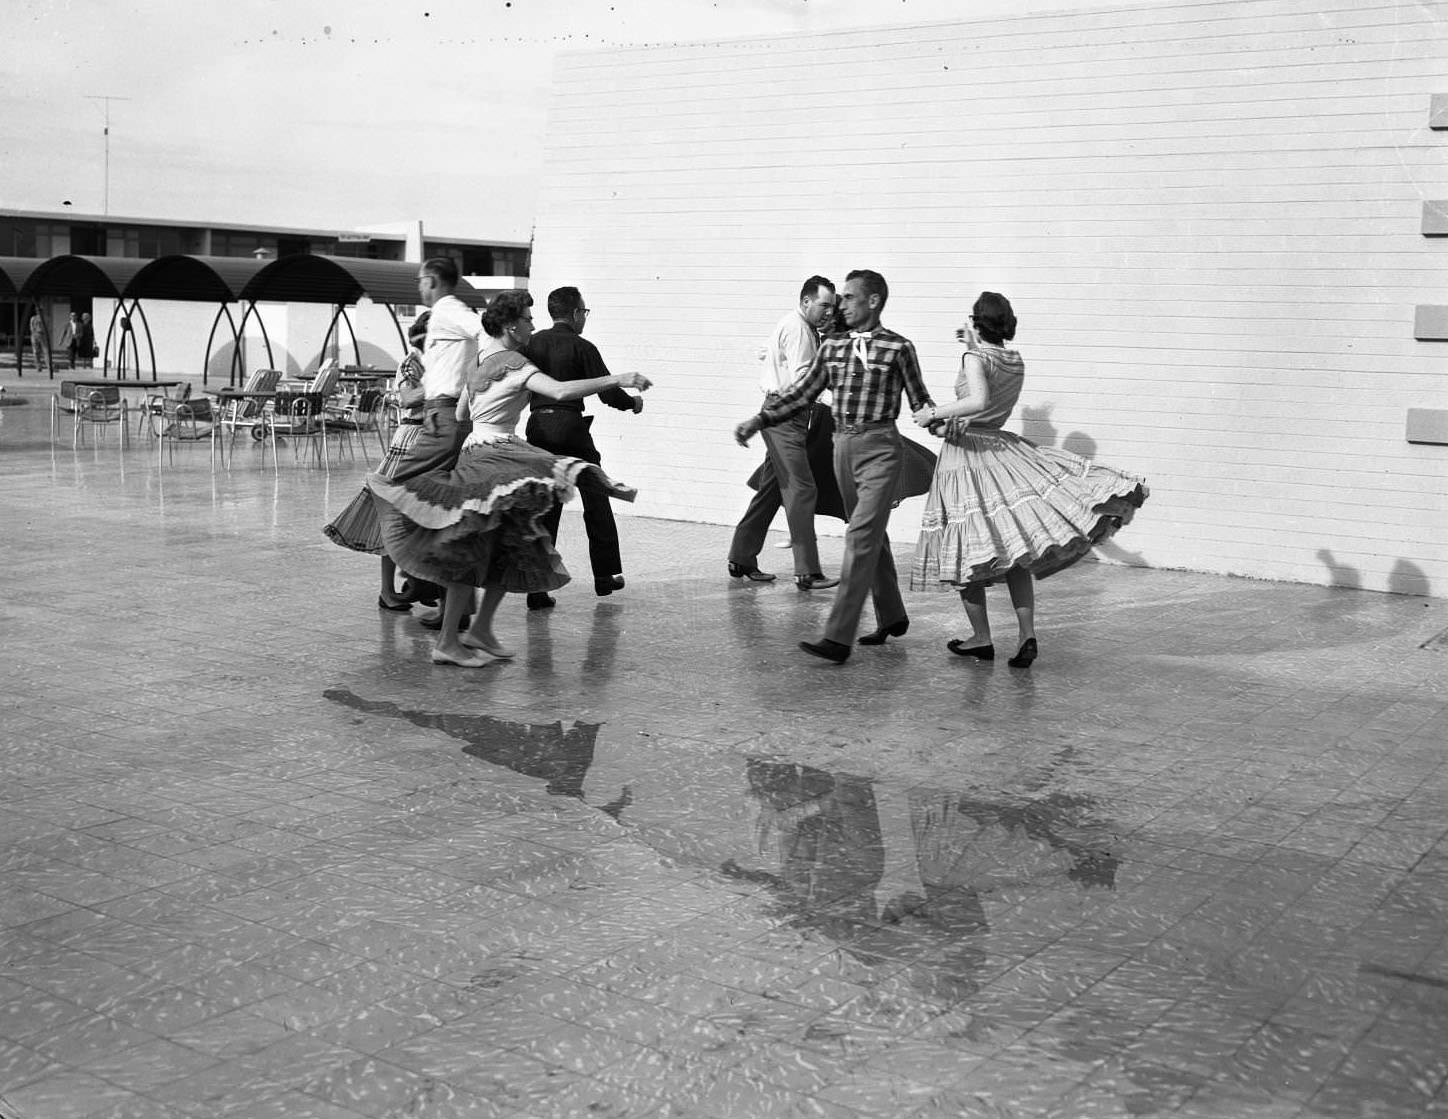 Men and Women Square Dancing, 1956